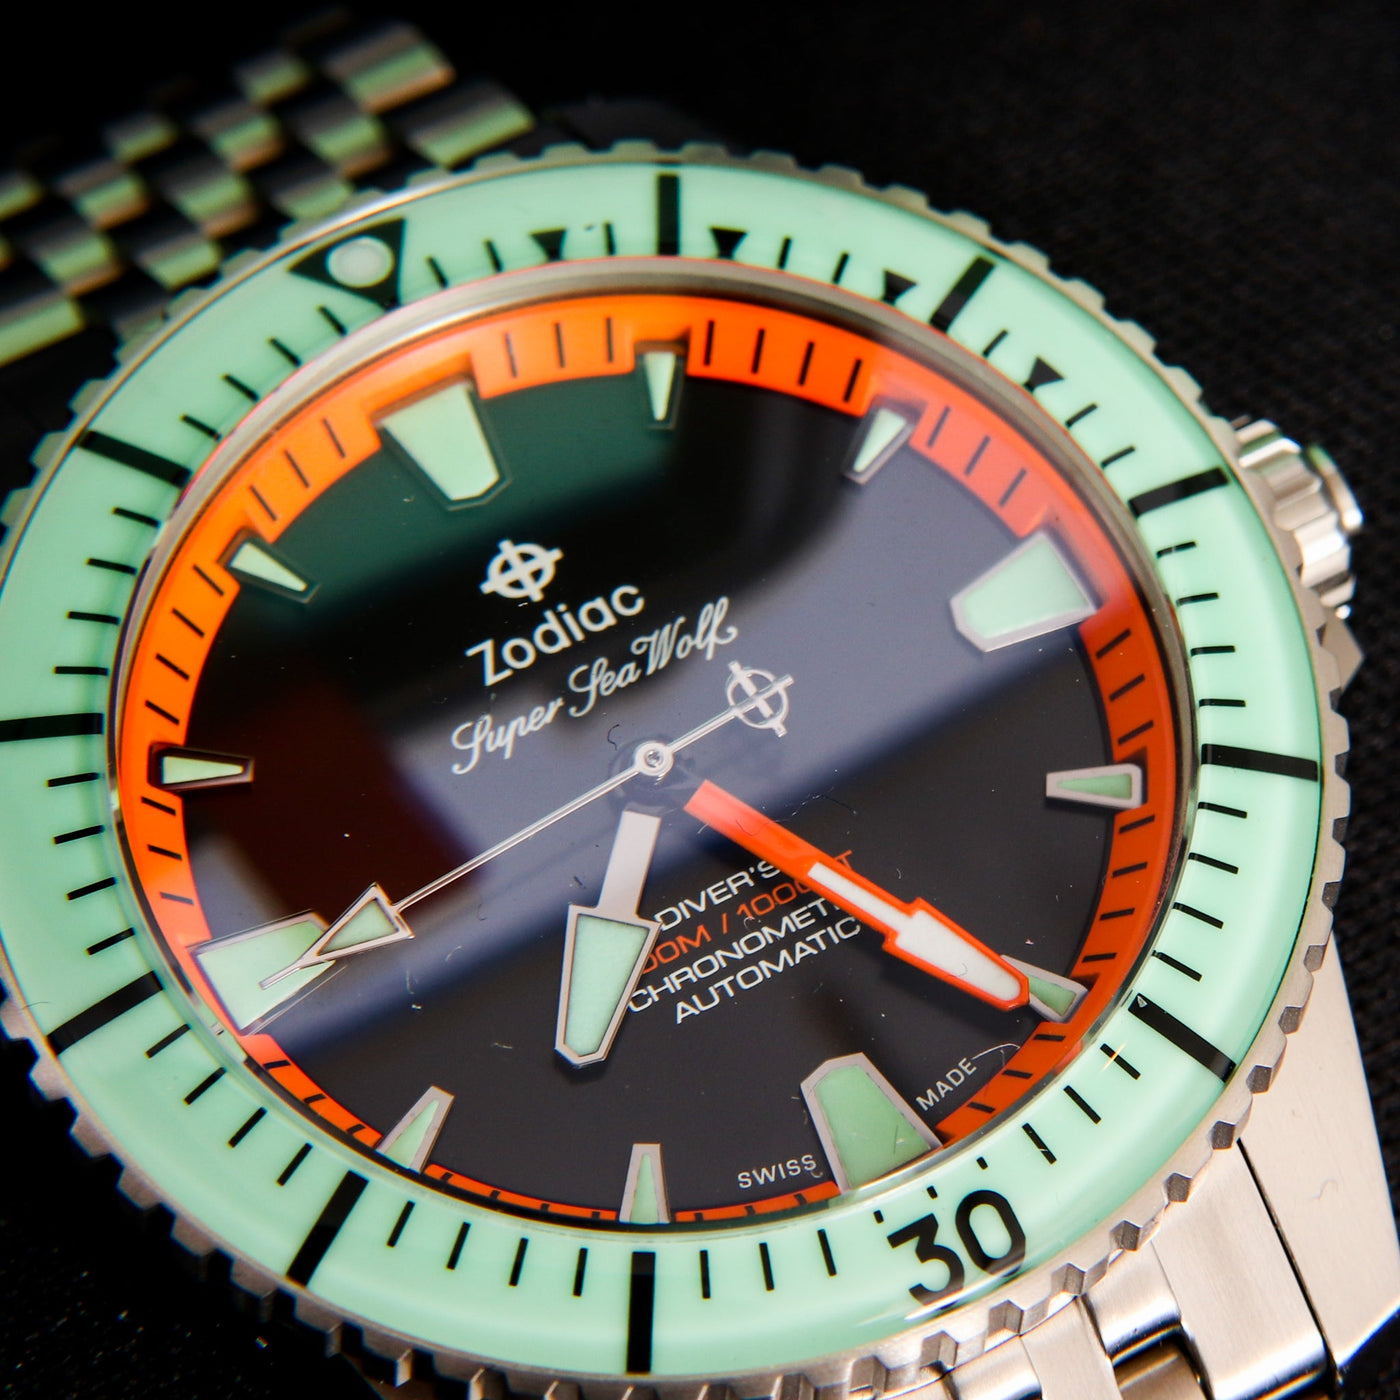 Zodiac Super Sea Wolf Pro Diver Titanium Limited Edition Watch Details